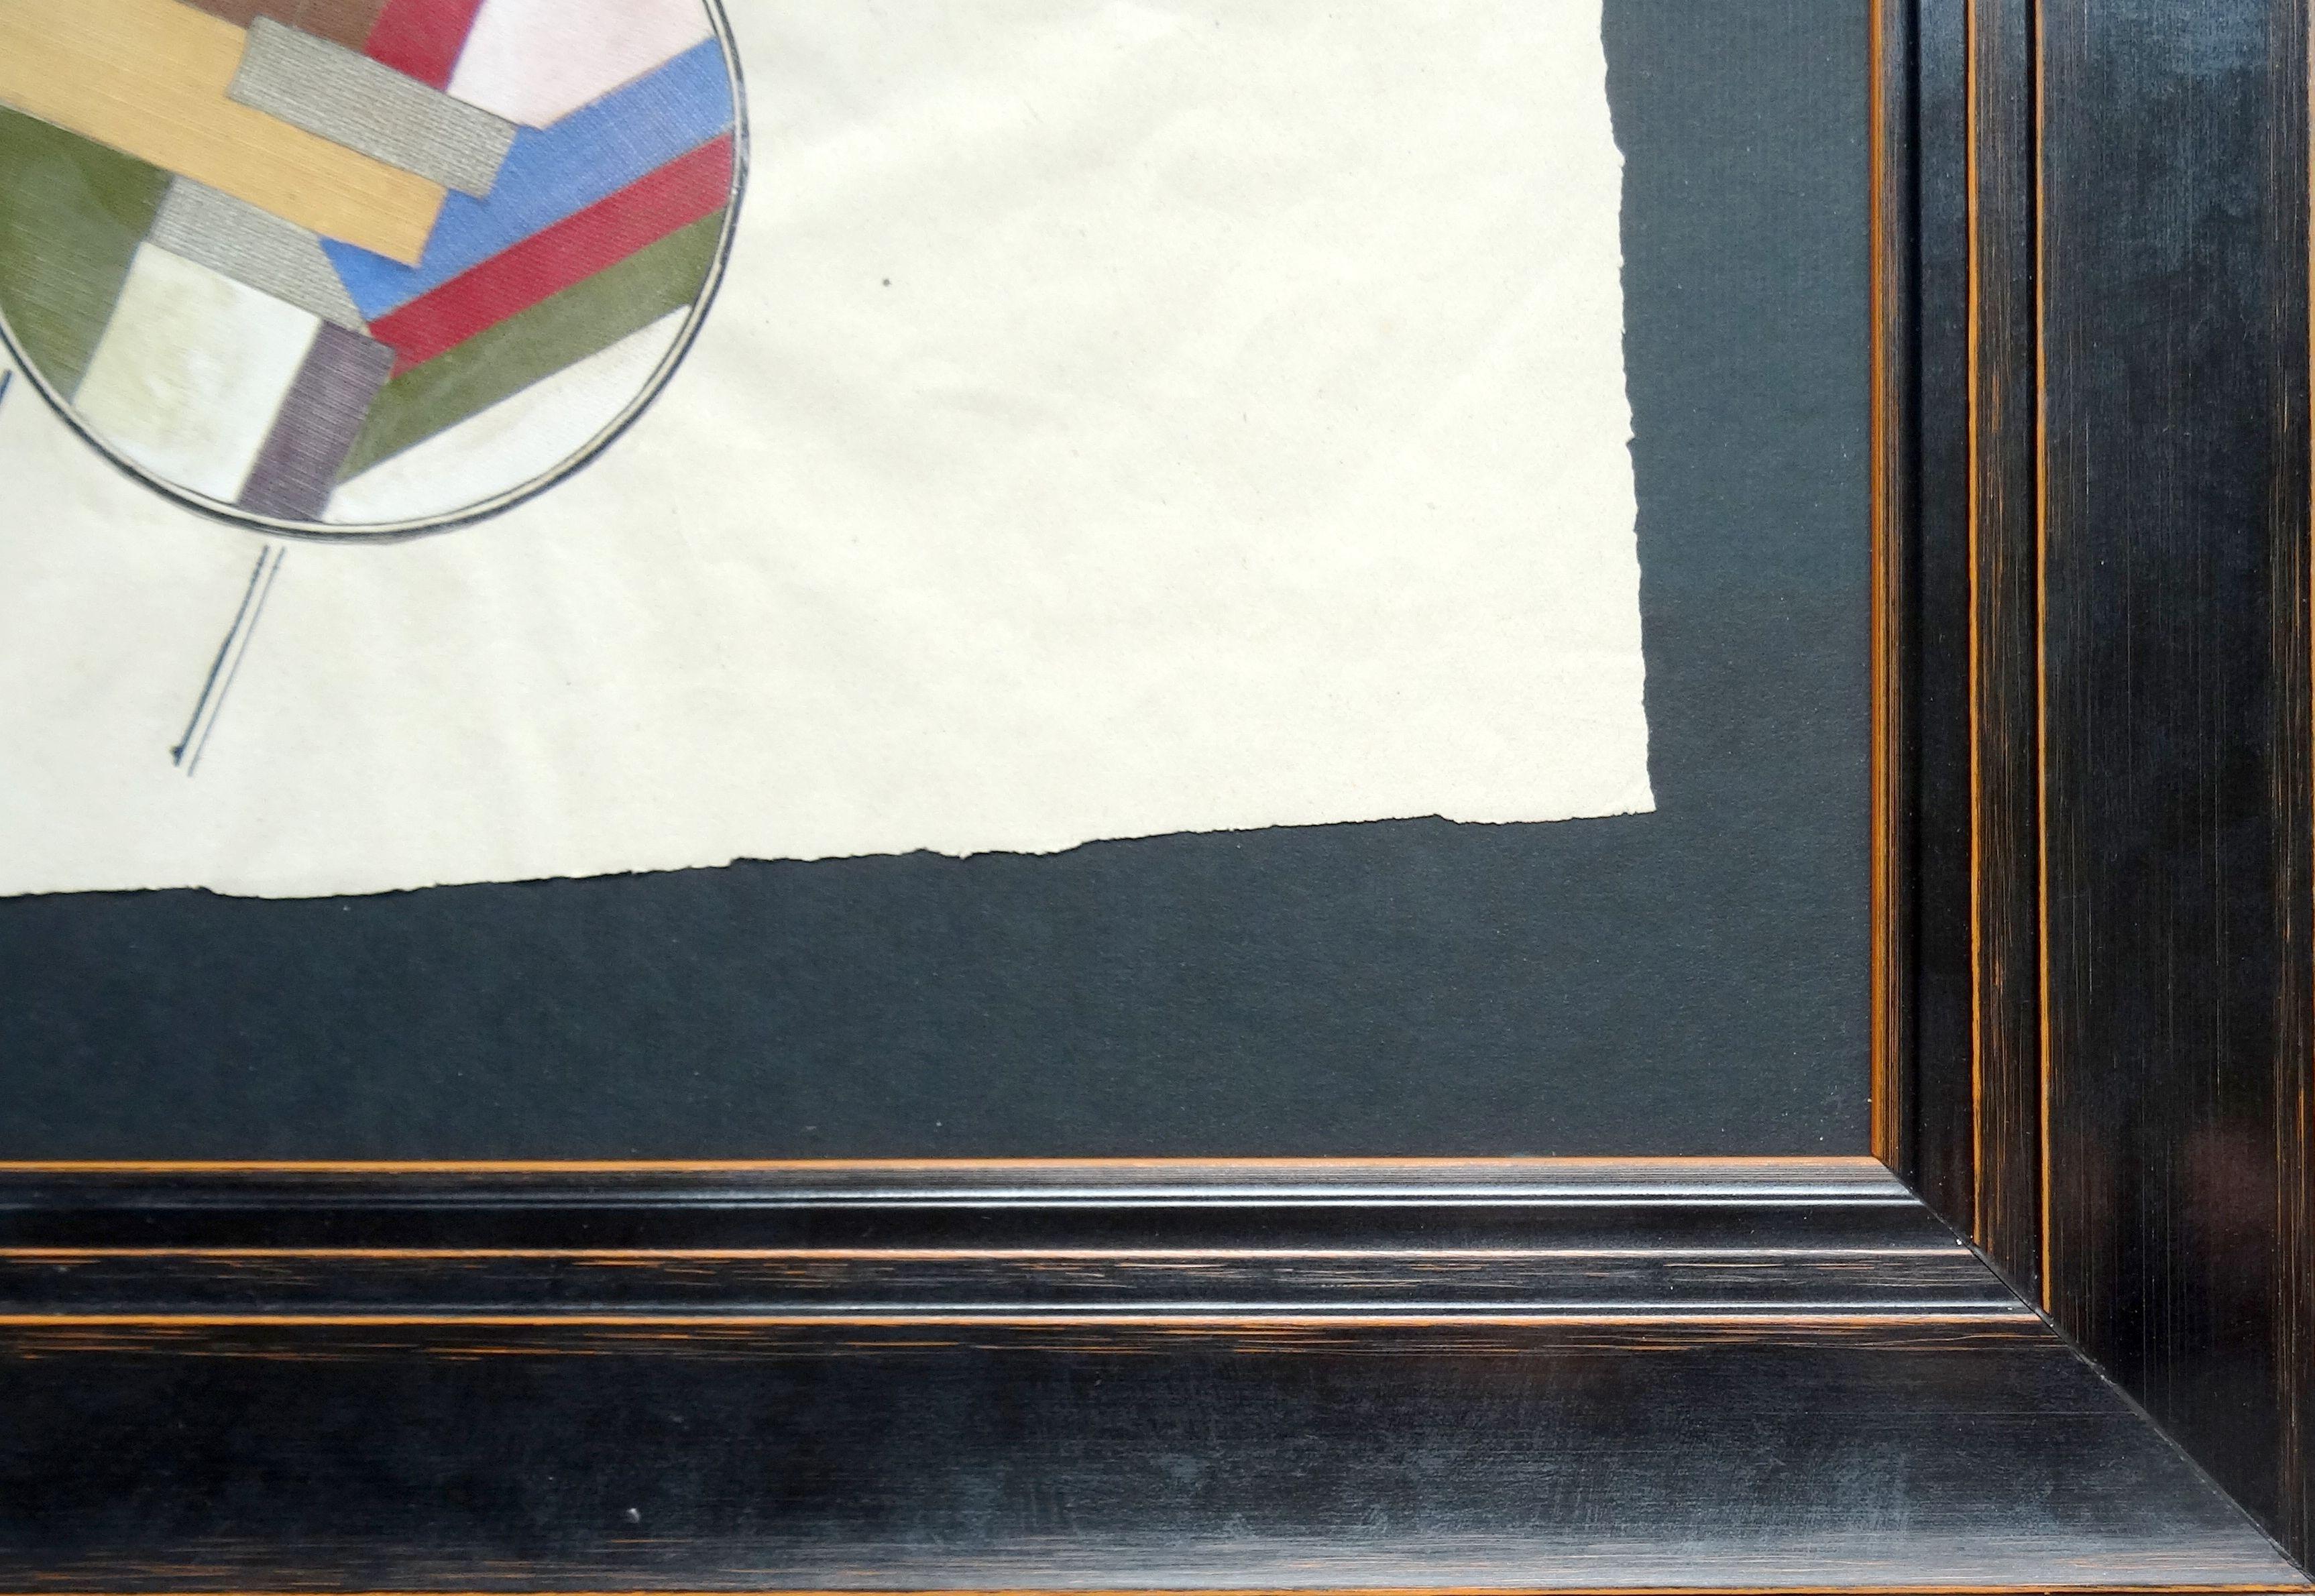 Suprematistische Komposition. 1919, Papier/Gouache 21,5 x 28,5 cm

Gustav Klucis (1895-1938) lettischer Maler, Bildhauer, Grafiker, Designer und Lehrer, tätig in Russland.

Er war ein wichtiger Vertreter des russischen Konstruktivismus. Er studierte